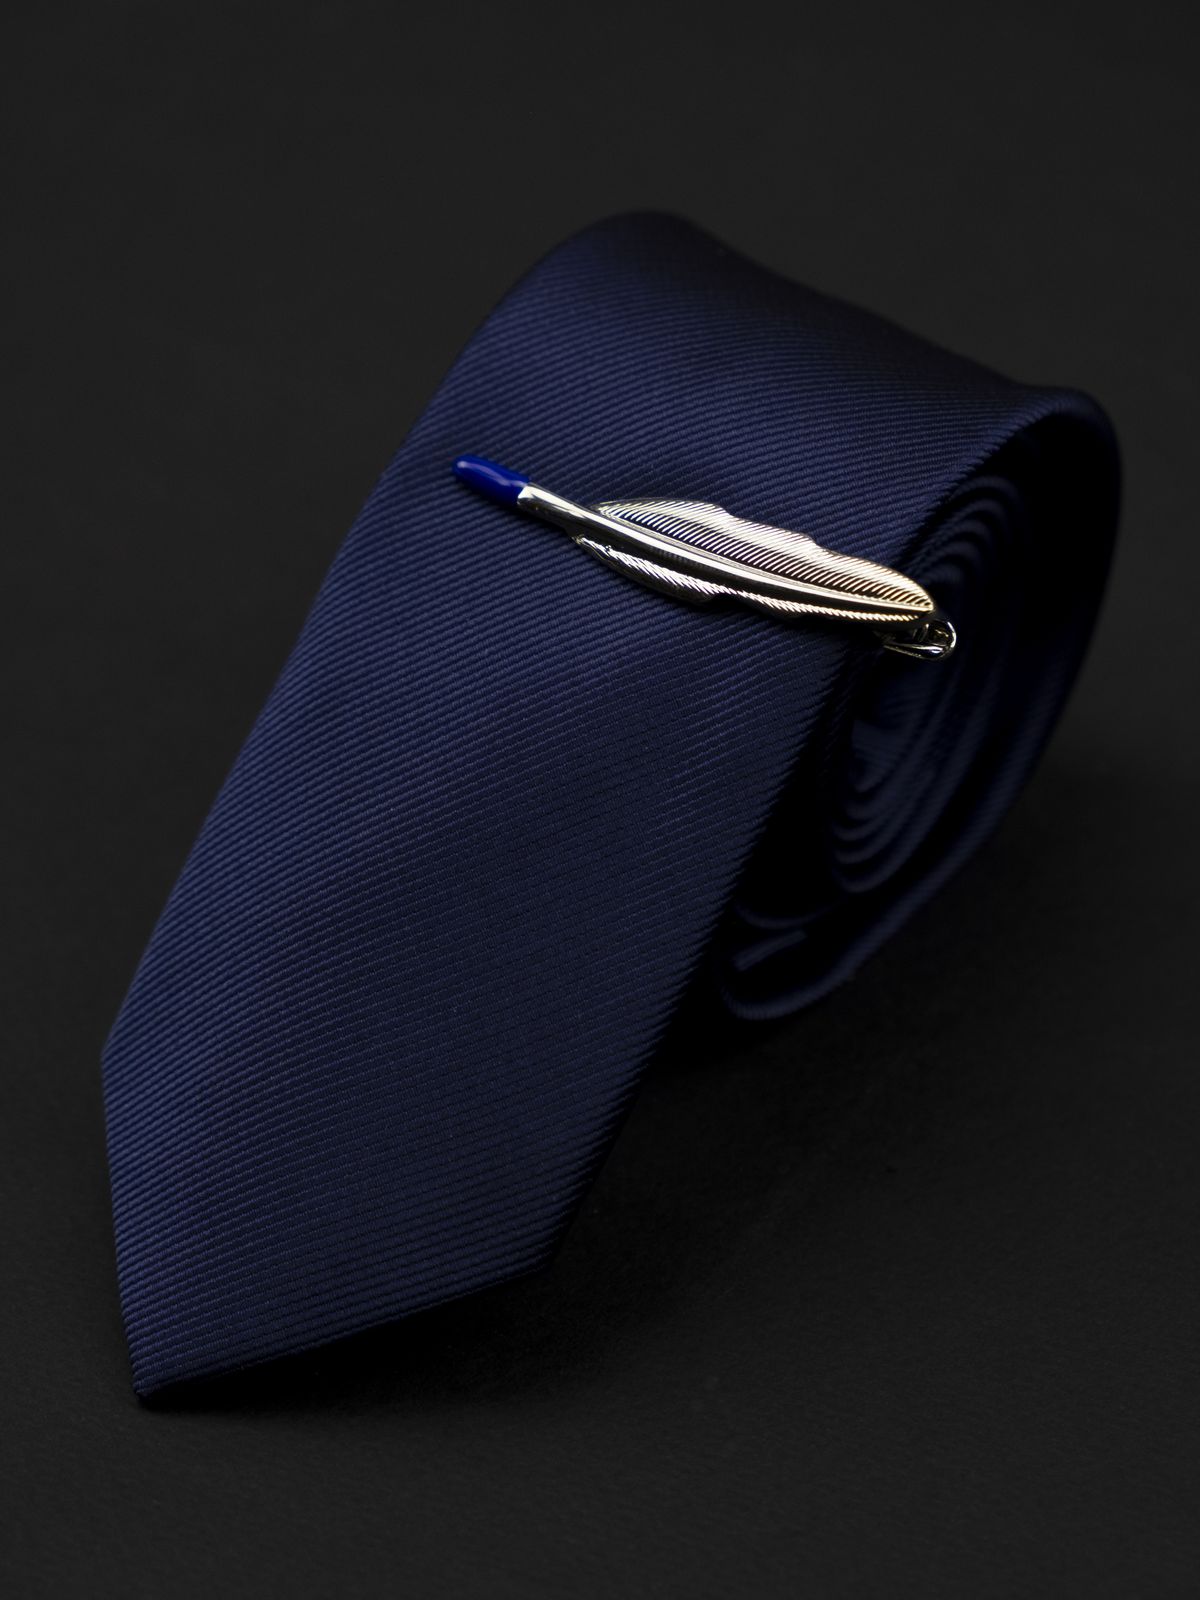 Зажим для галстука перо стило серебристое купить. Состав: Ювелирная сталь 316L, Цвет: Серебристый, Габариты: 52 мм х 10 мм, Вес: 22 гр.; 